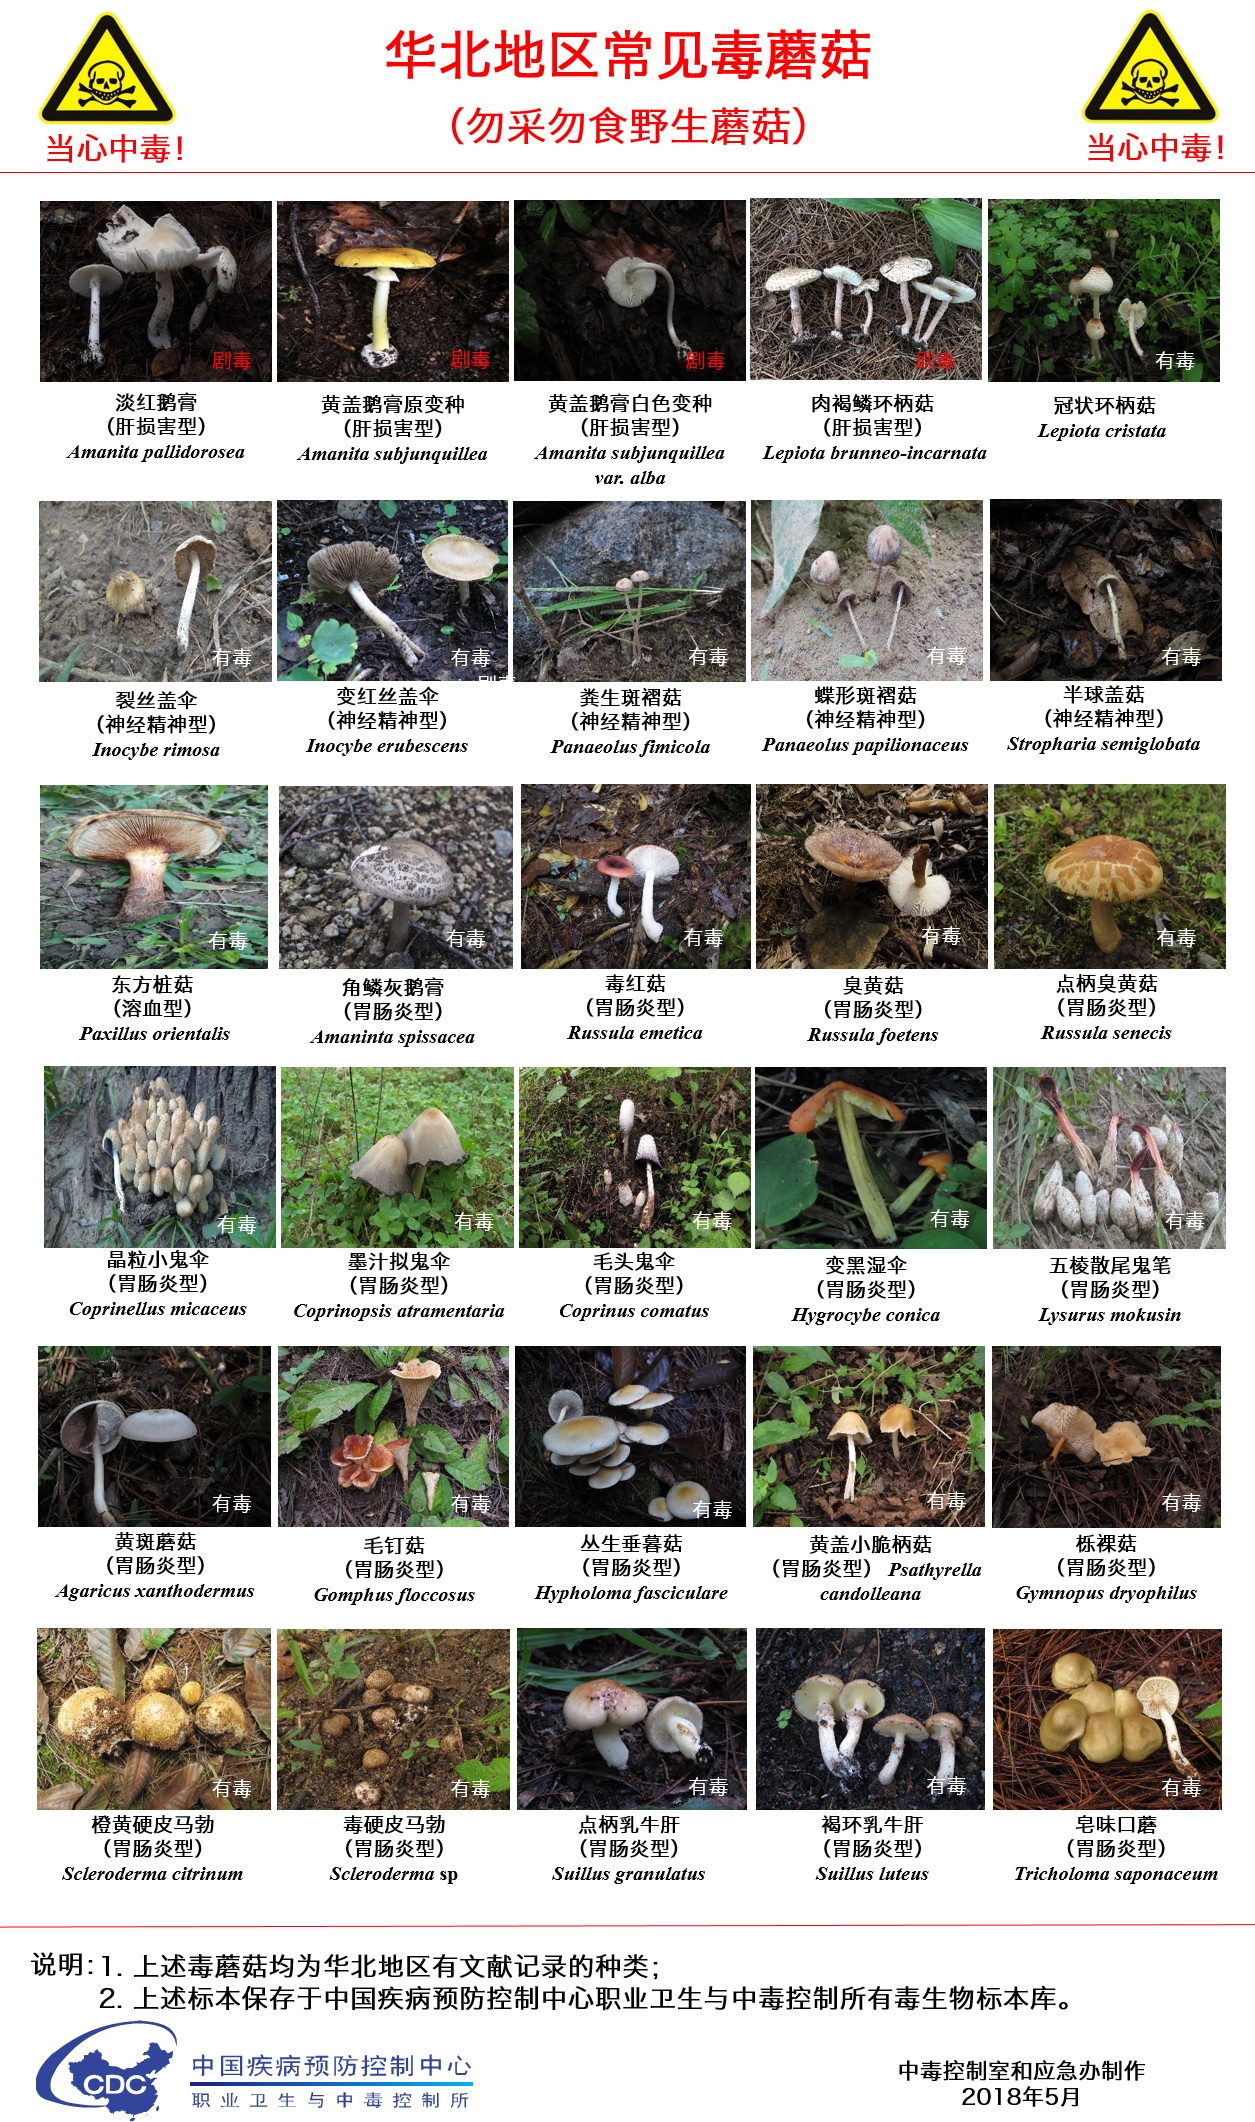 华北地区常见毒蘑菇